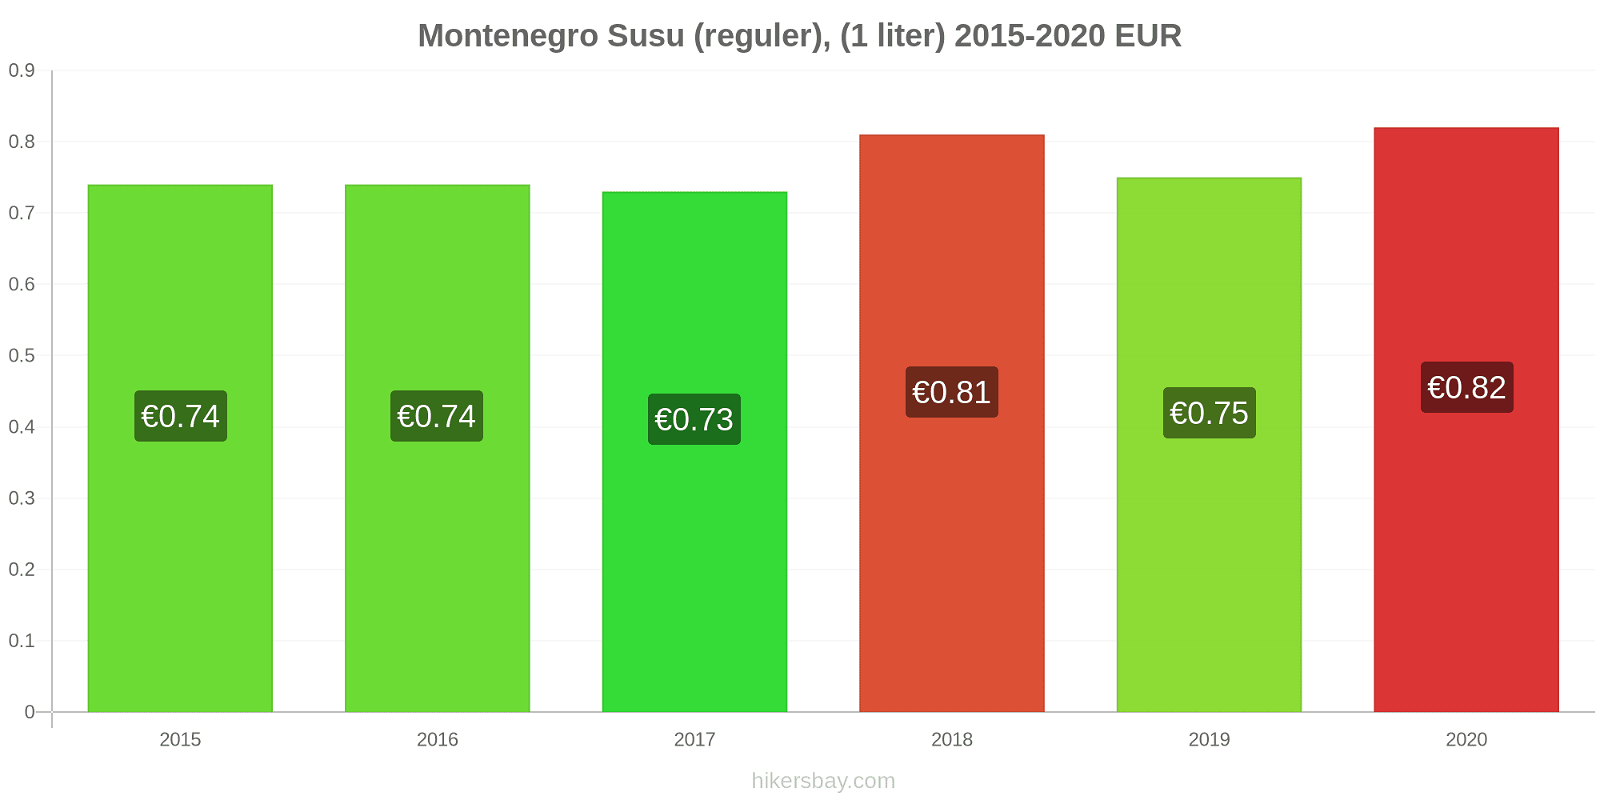 Montenegro perubahan harga Susu (reguler), (1 liter) hikersbay.com